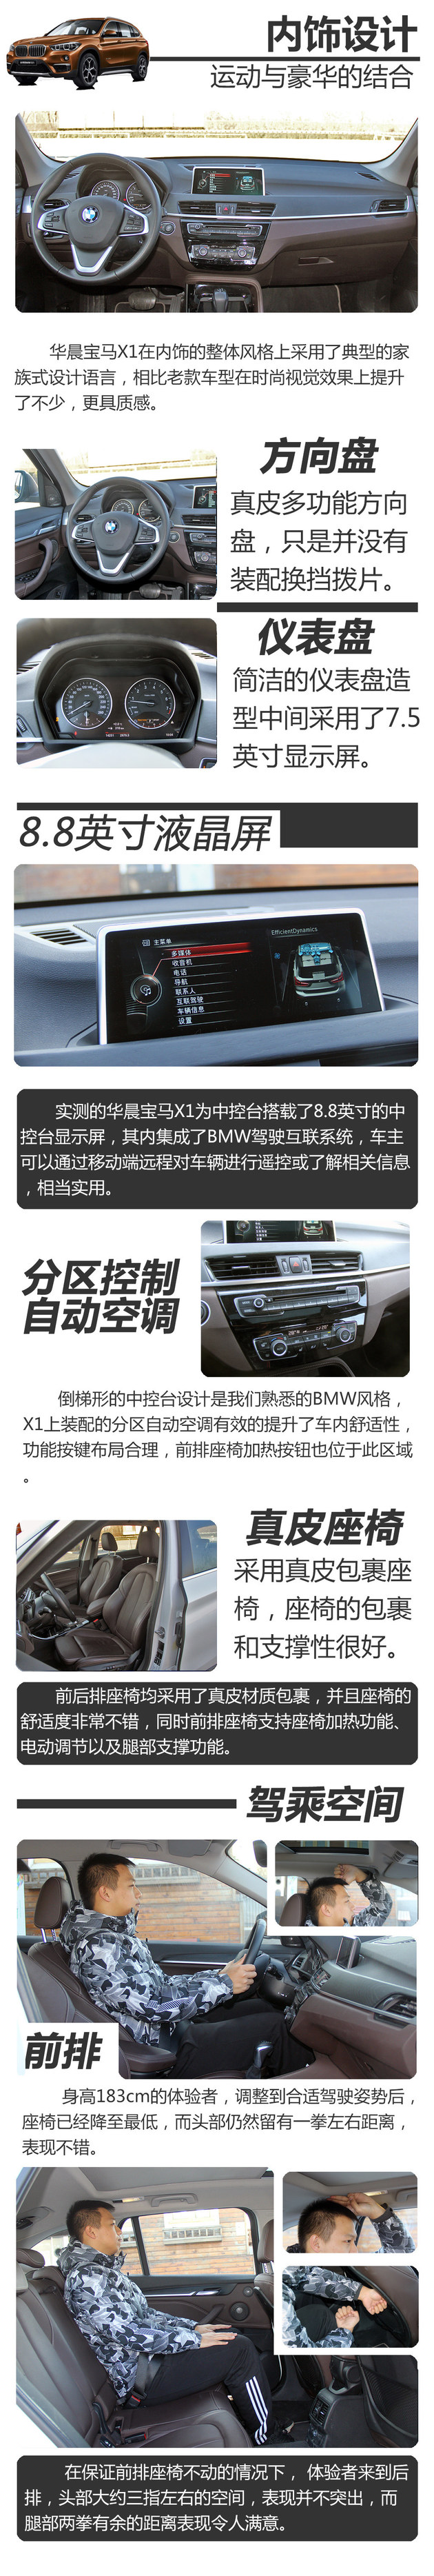 华晨宝马X1 2.0T低功率版测试 加速7.58秒